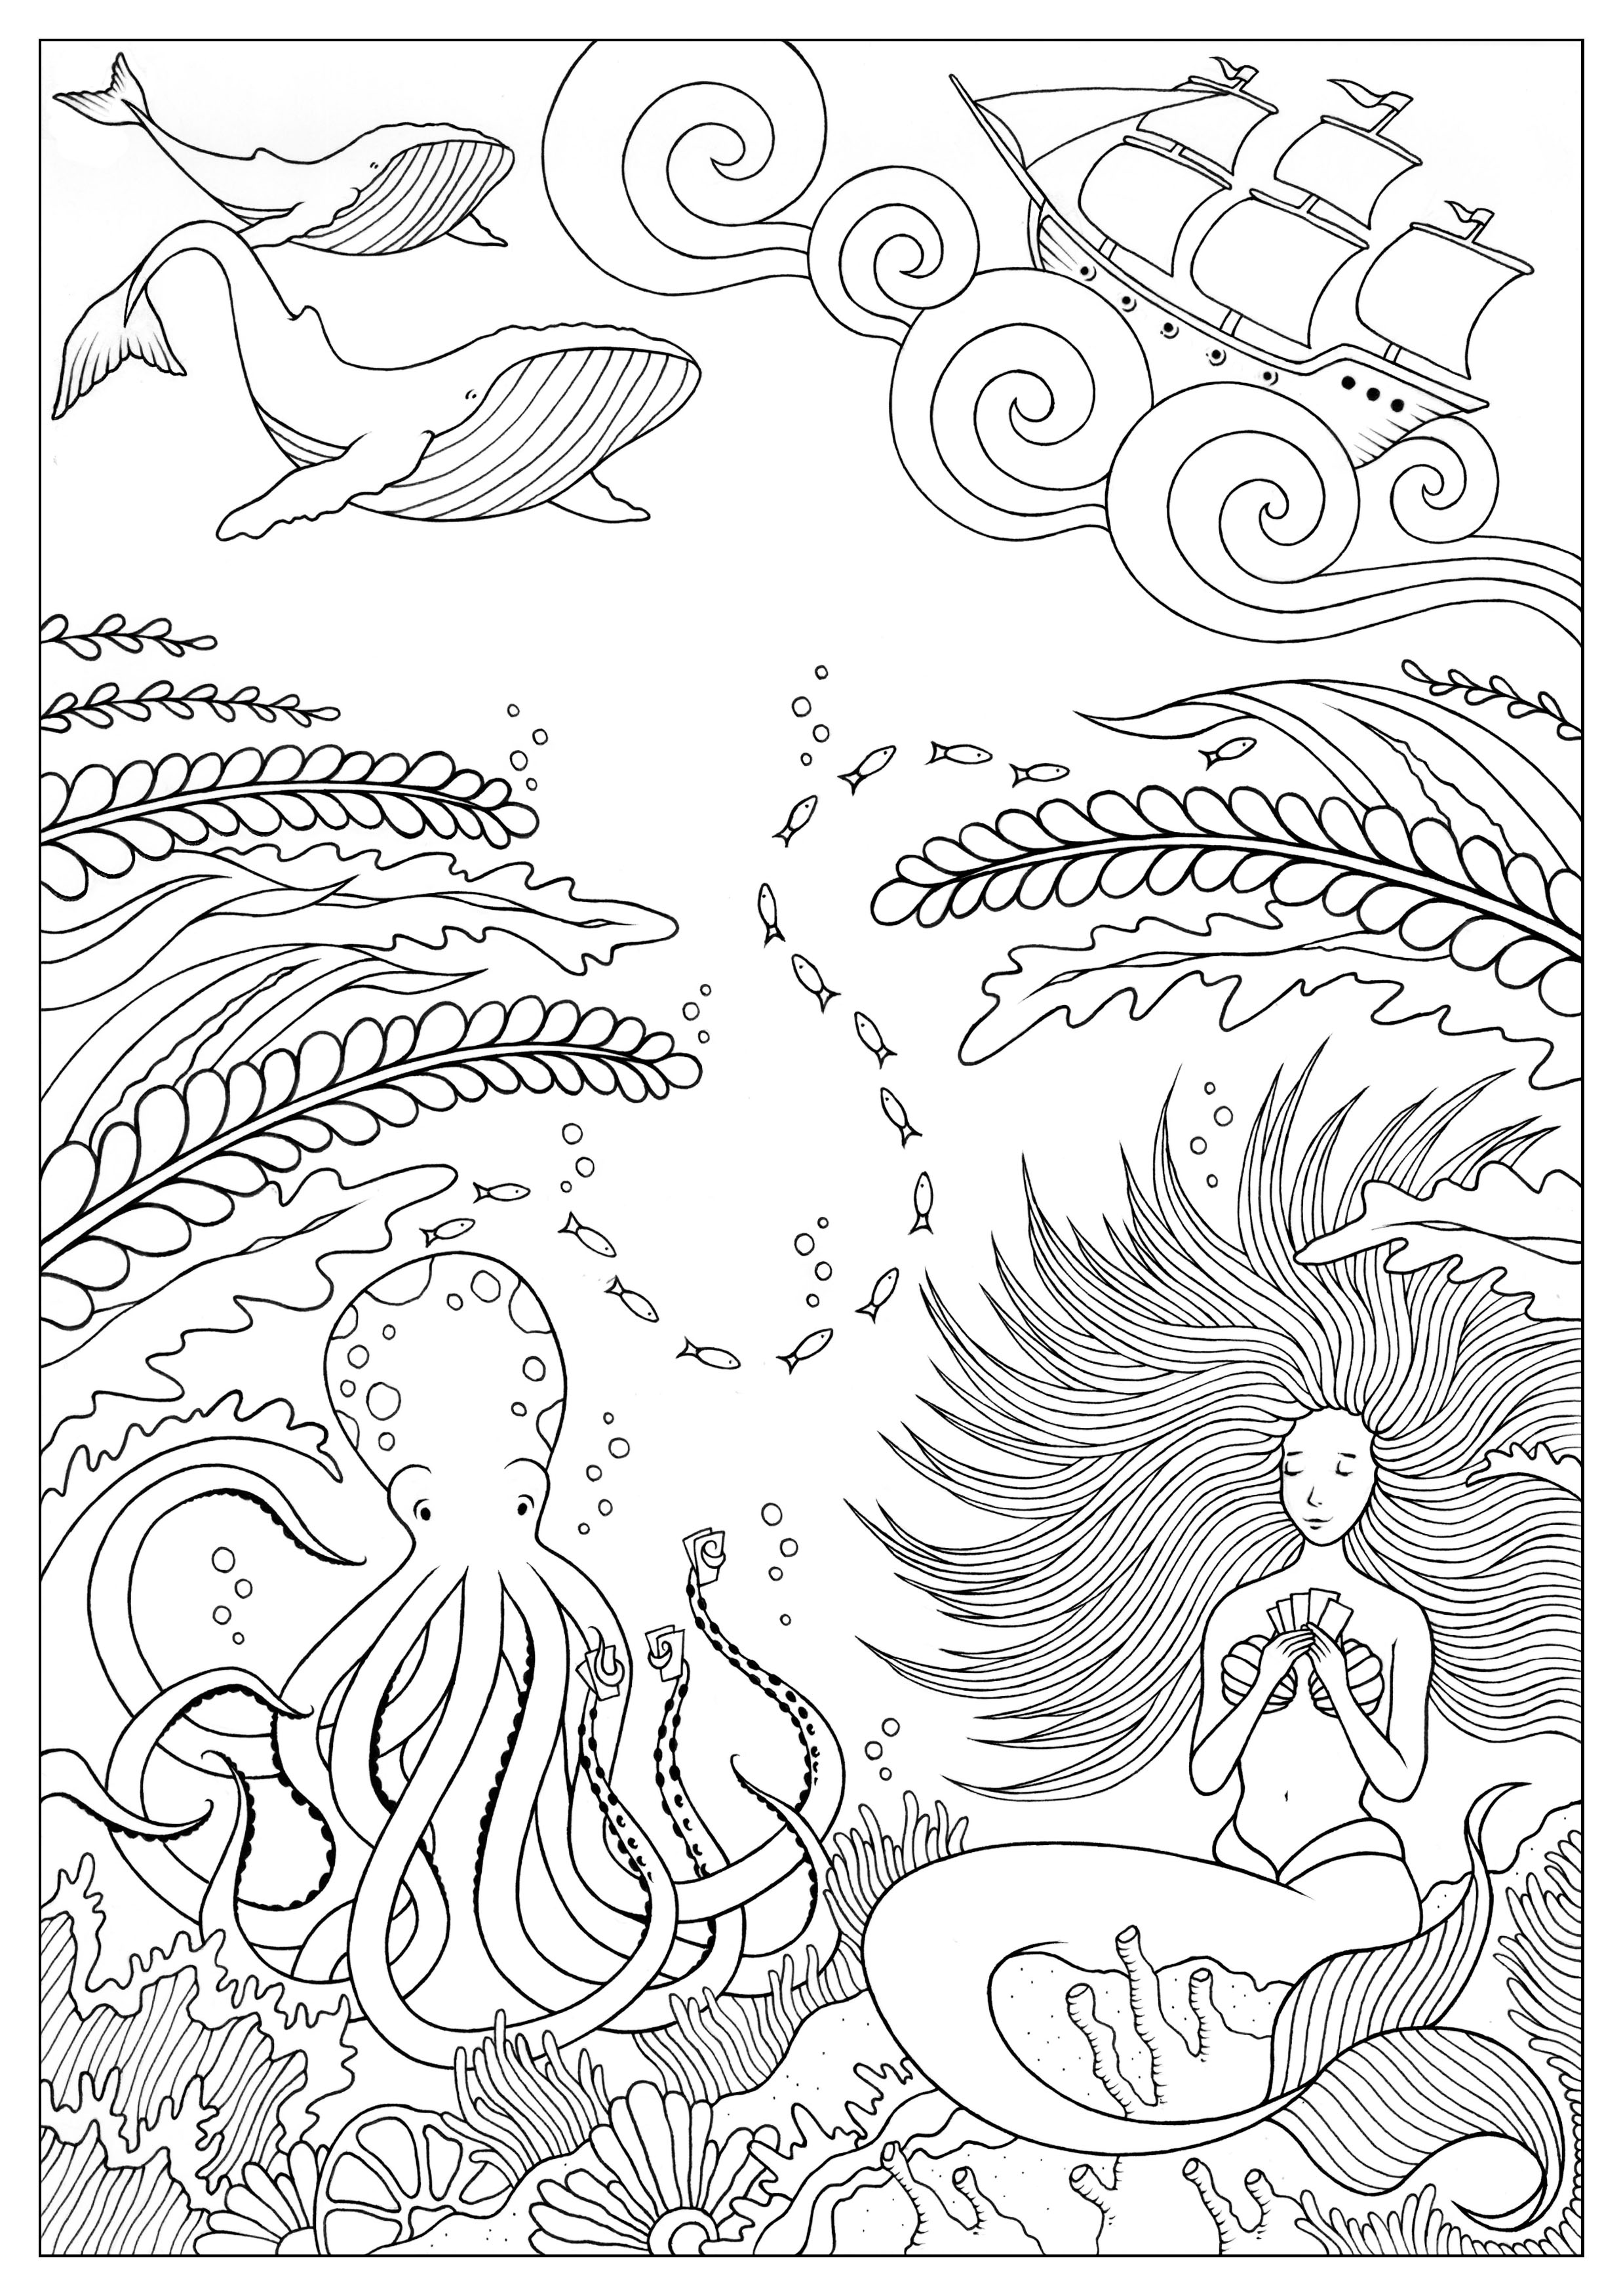 Disegni da colorare per adulti : Sirenas - 4